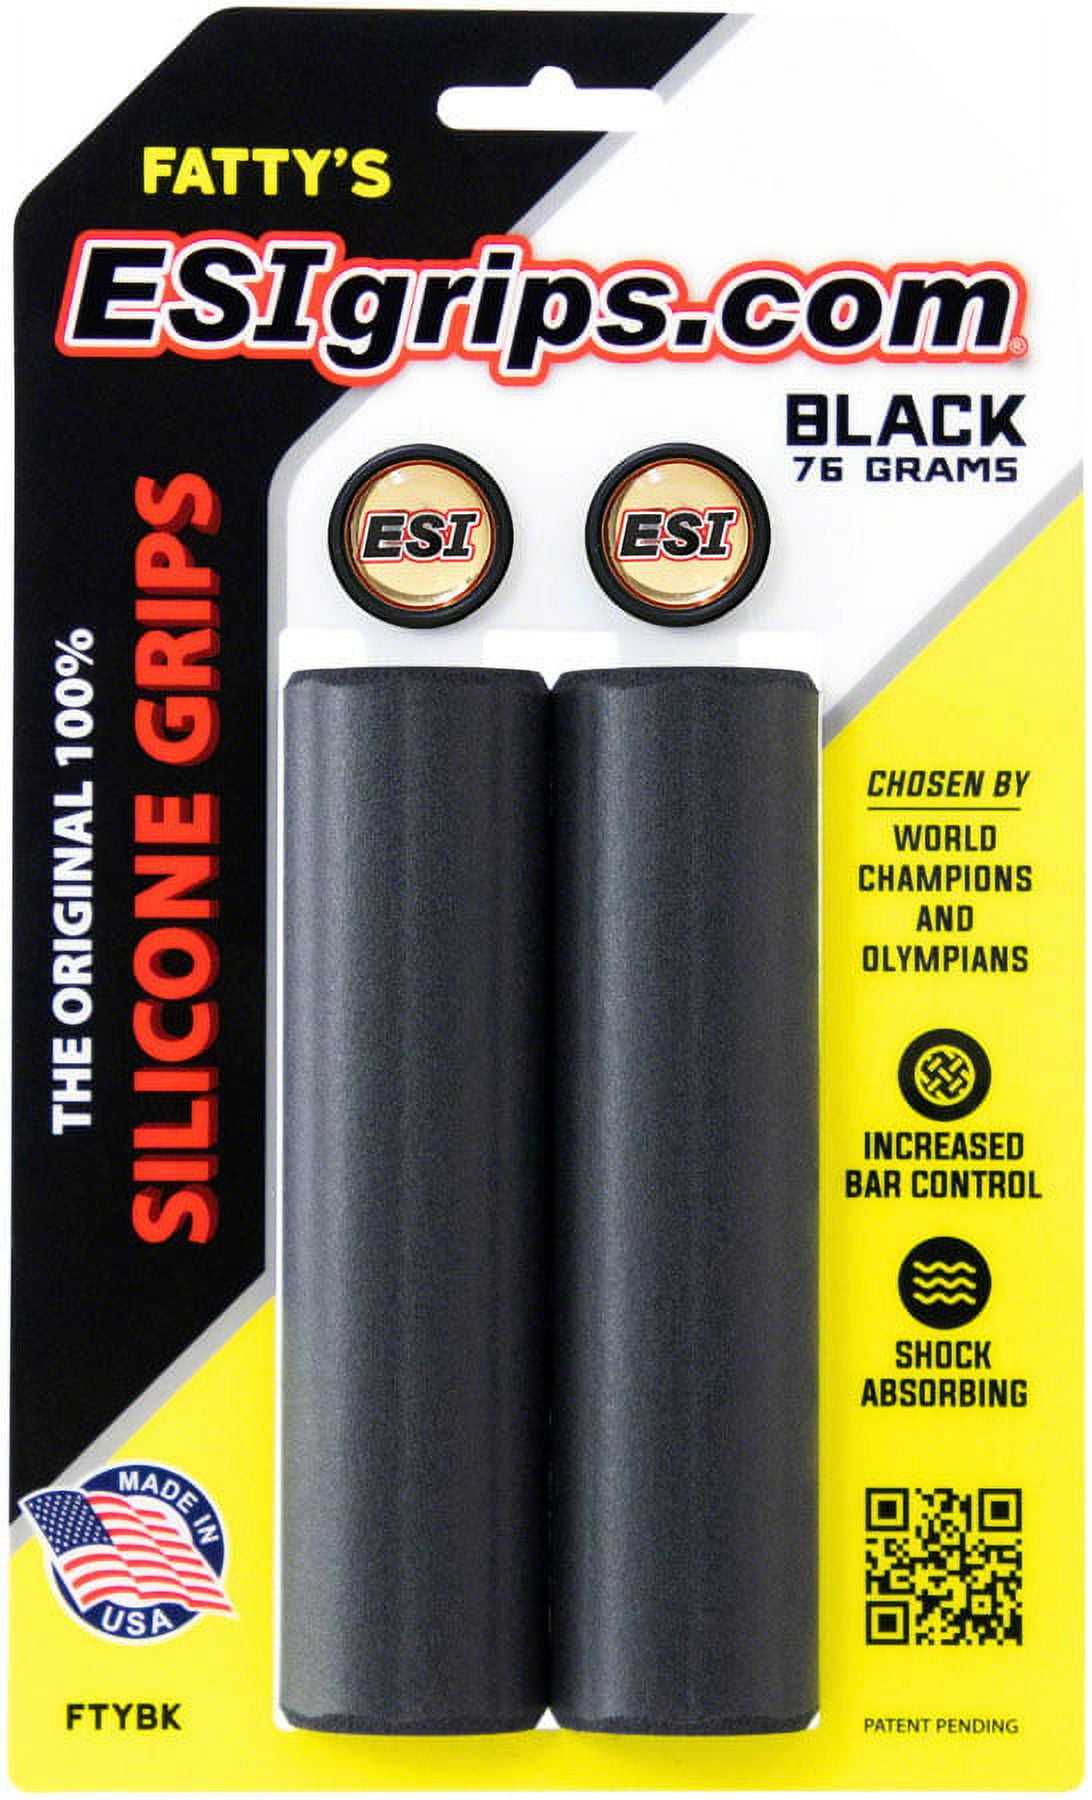 ESI Plush Silicone Grips - Black